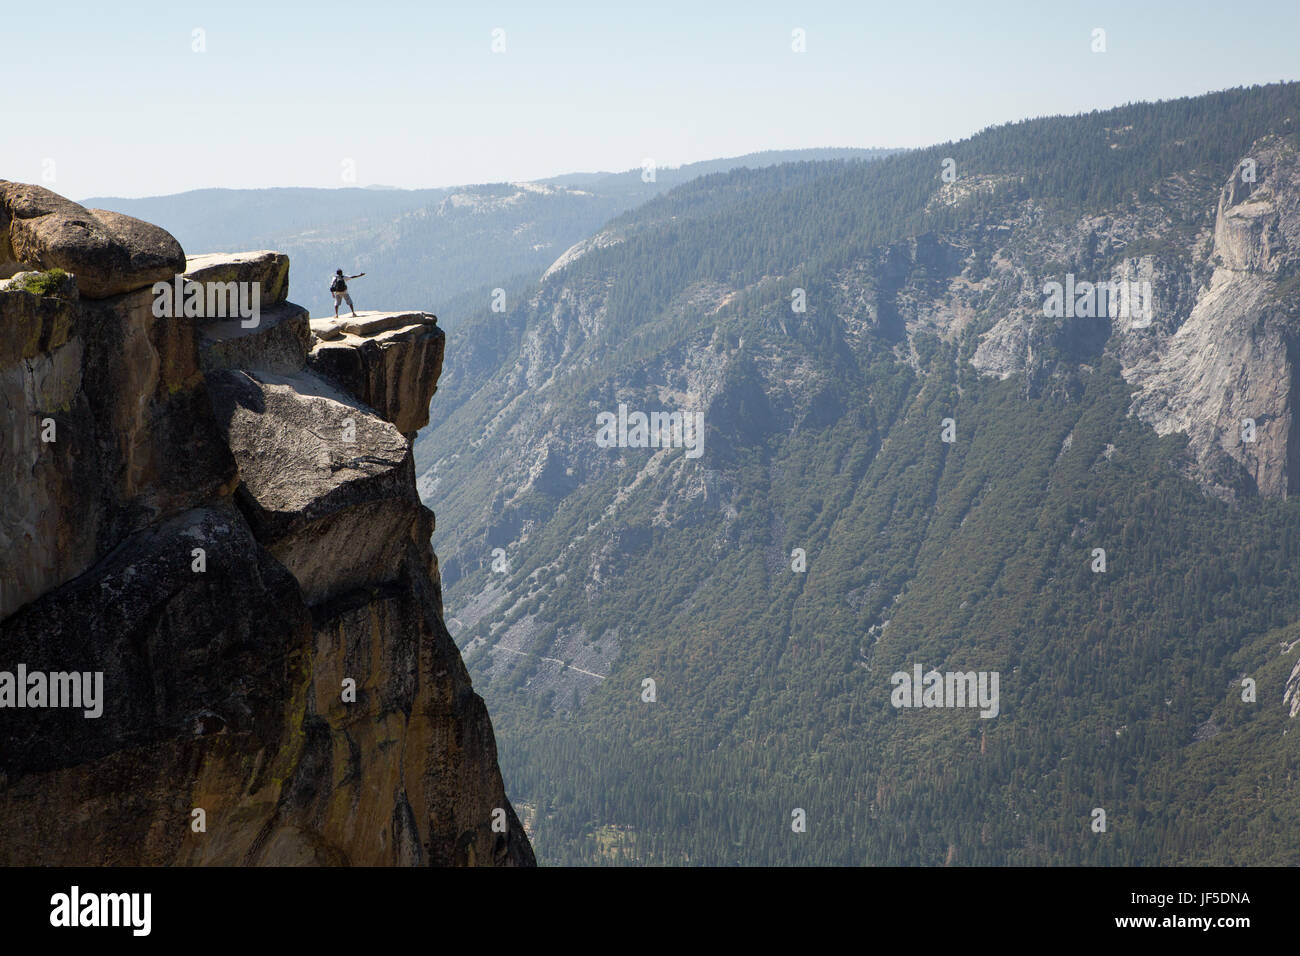 Un visiteur de Yosemite National Park se situe sur une saillie rocheuse à Taft Point. Cette vire, à une altitude de 7 500 pieds, s'élève à des milliers de pieds au-dessus de la vallée de Yosemite. Banque D'Images